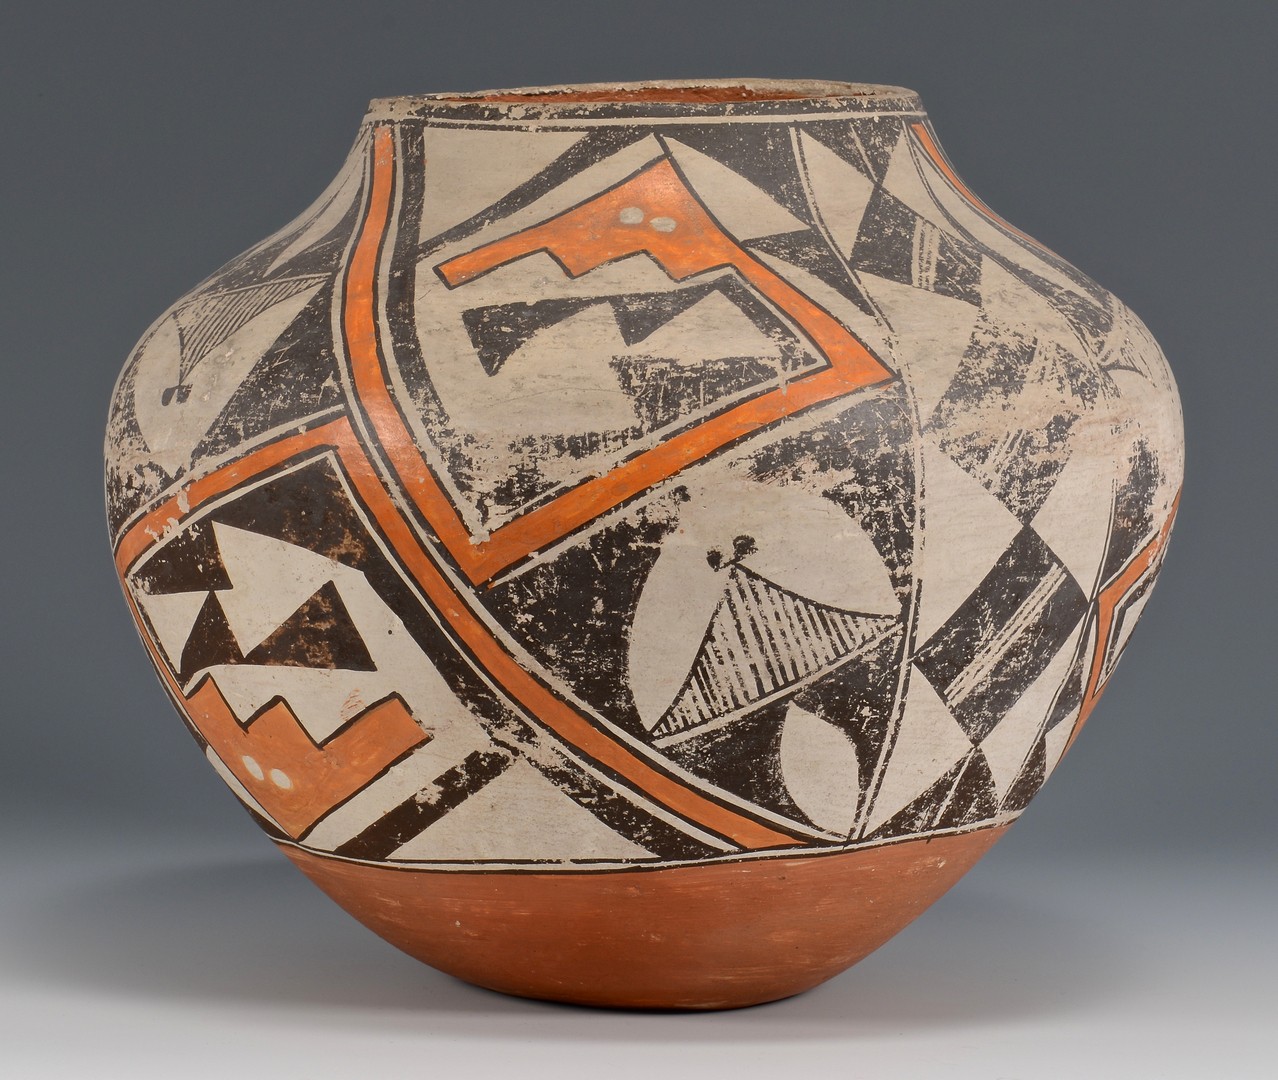 Lot 505: 3 Native American Southwestern Pottery Vessels